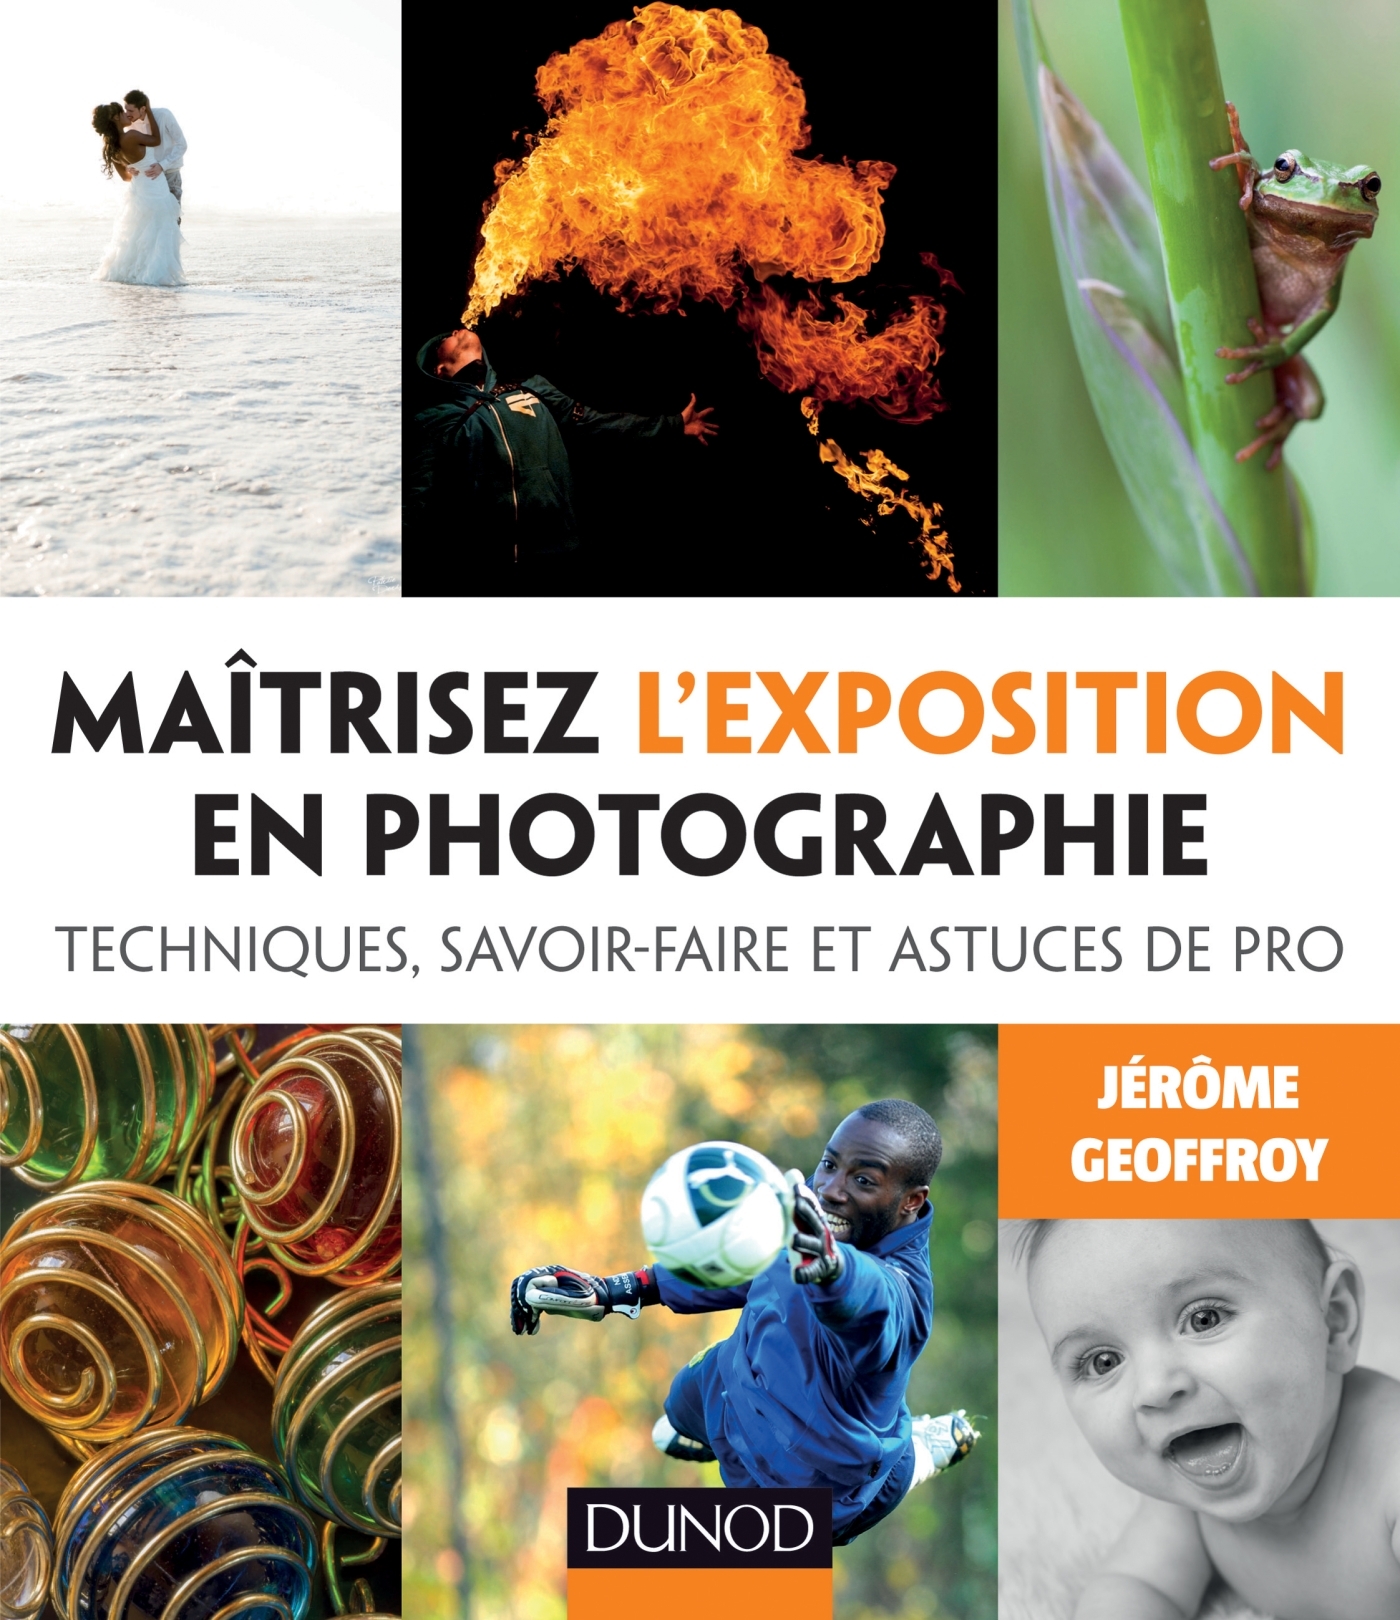 Pola & Co - Photo instantanée : le guide pratique - Livre et ebook  Photographie de Jérôme Geoffroy - Dunod